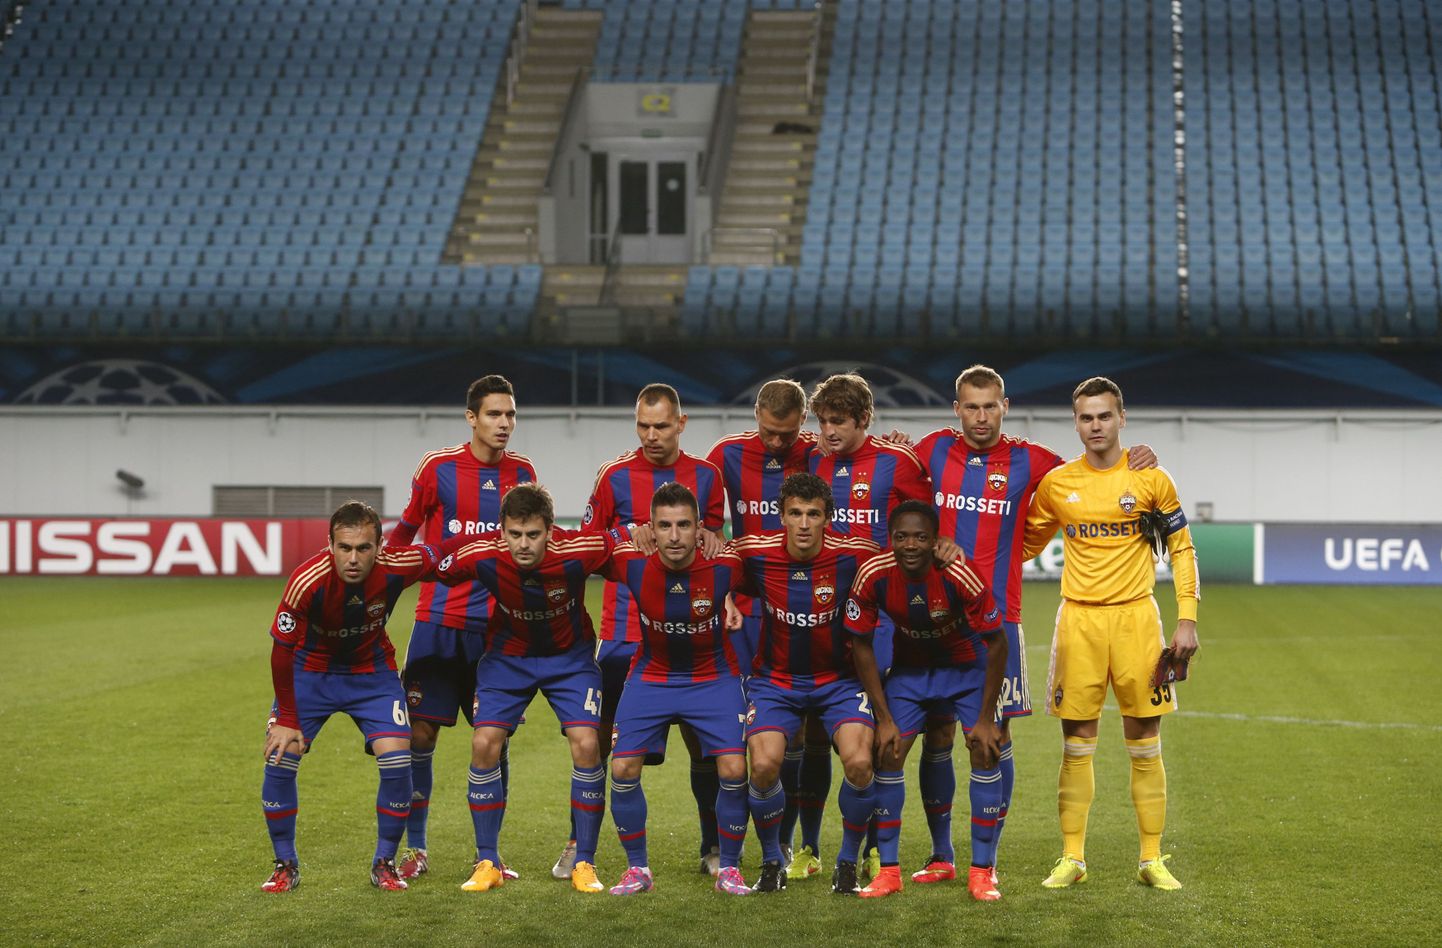 Матч в Химках проходил, согласно решению УЕФА, без зрителей из-за поведения болельщиков красно-синих на матче группового этапа турнира сезона-2013/14 с чешской "Викторией Пльзень".